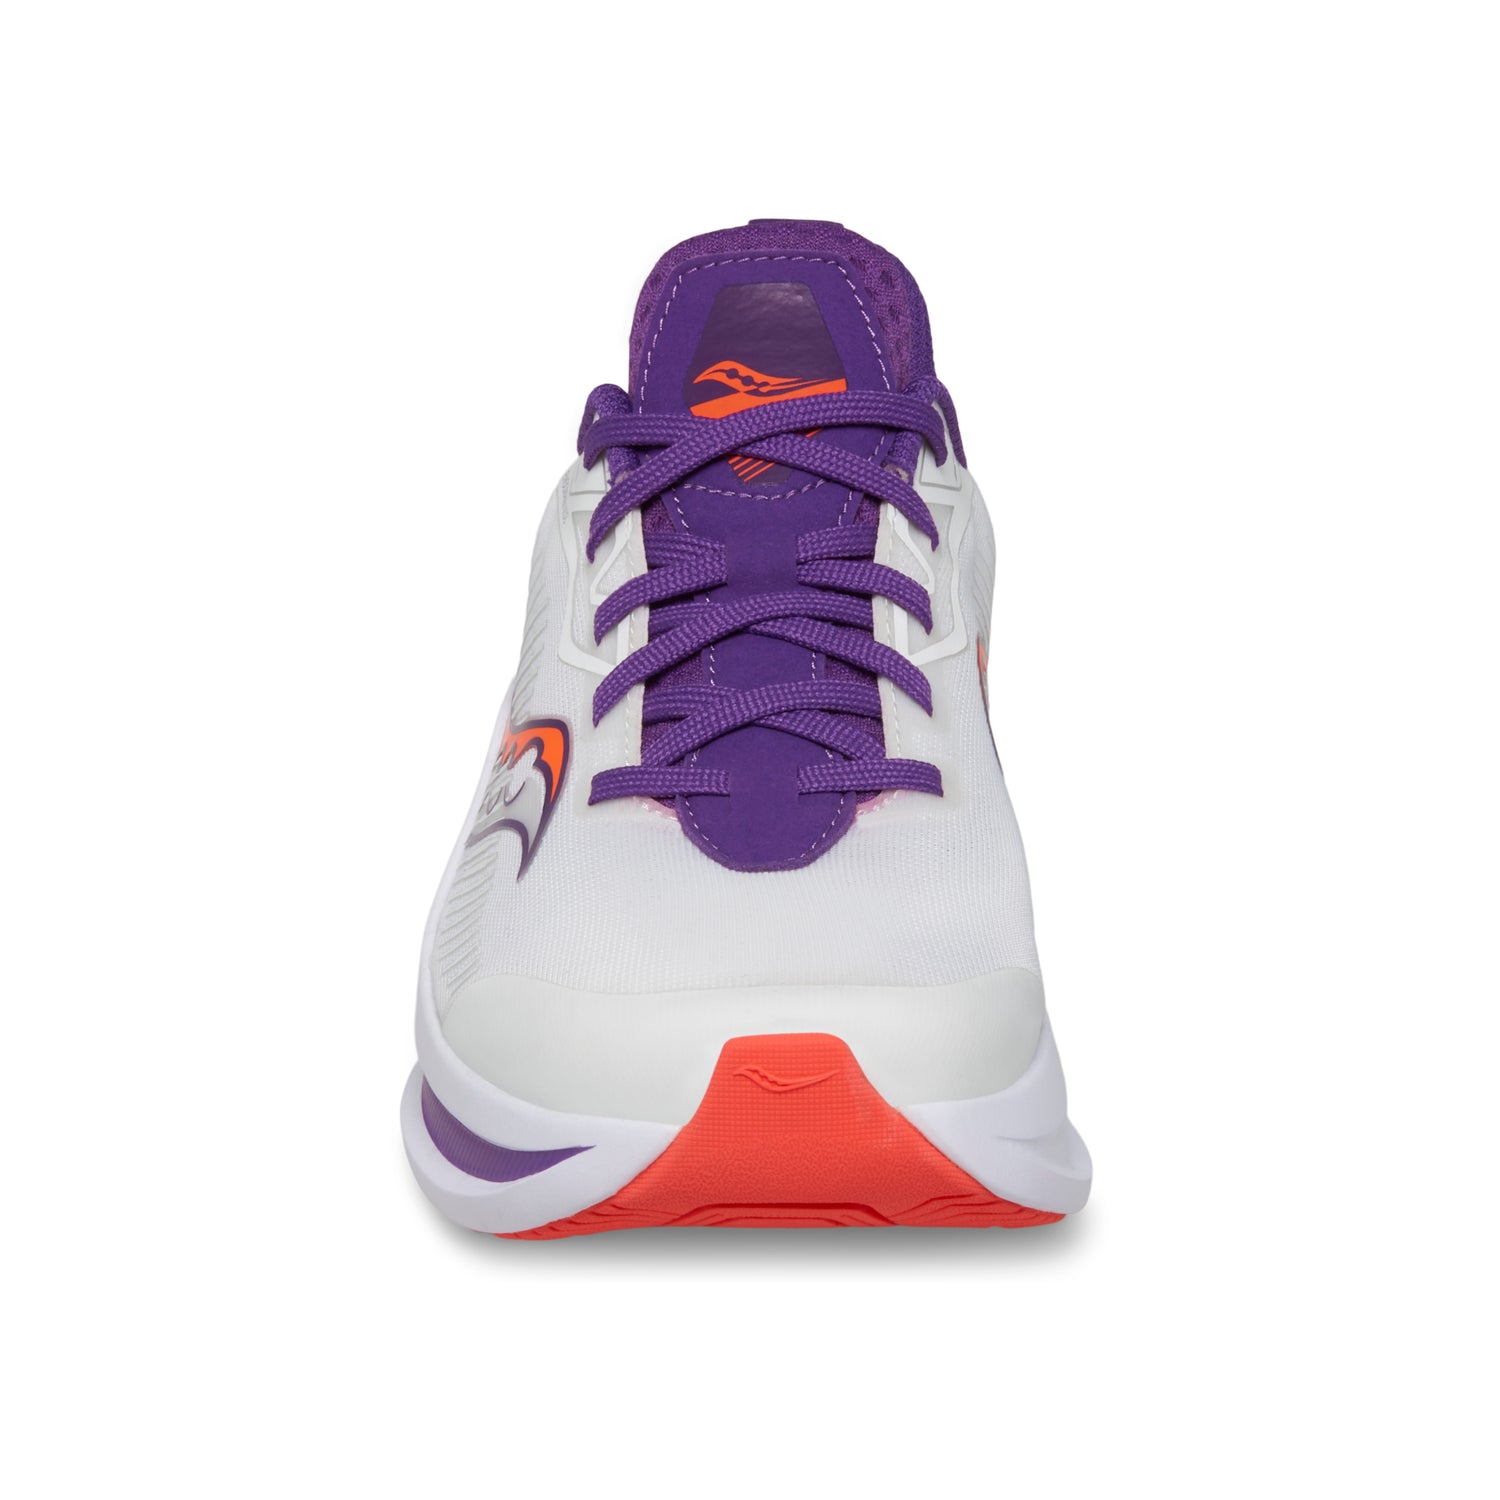 Endorphin KDZ Sneaker Orange/Grey